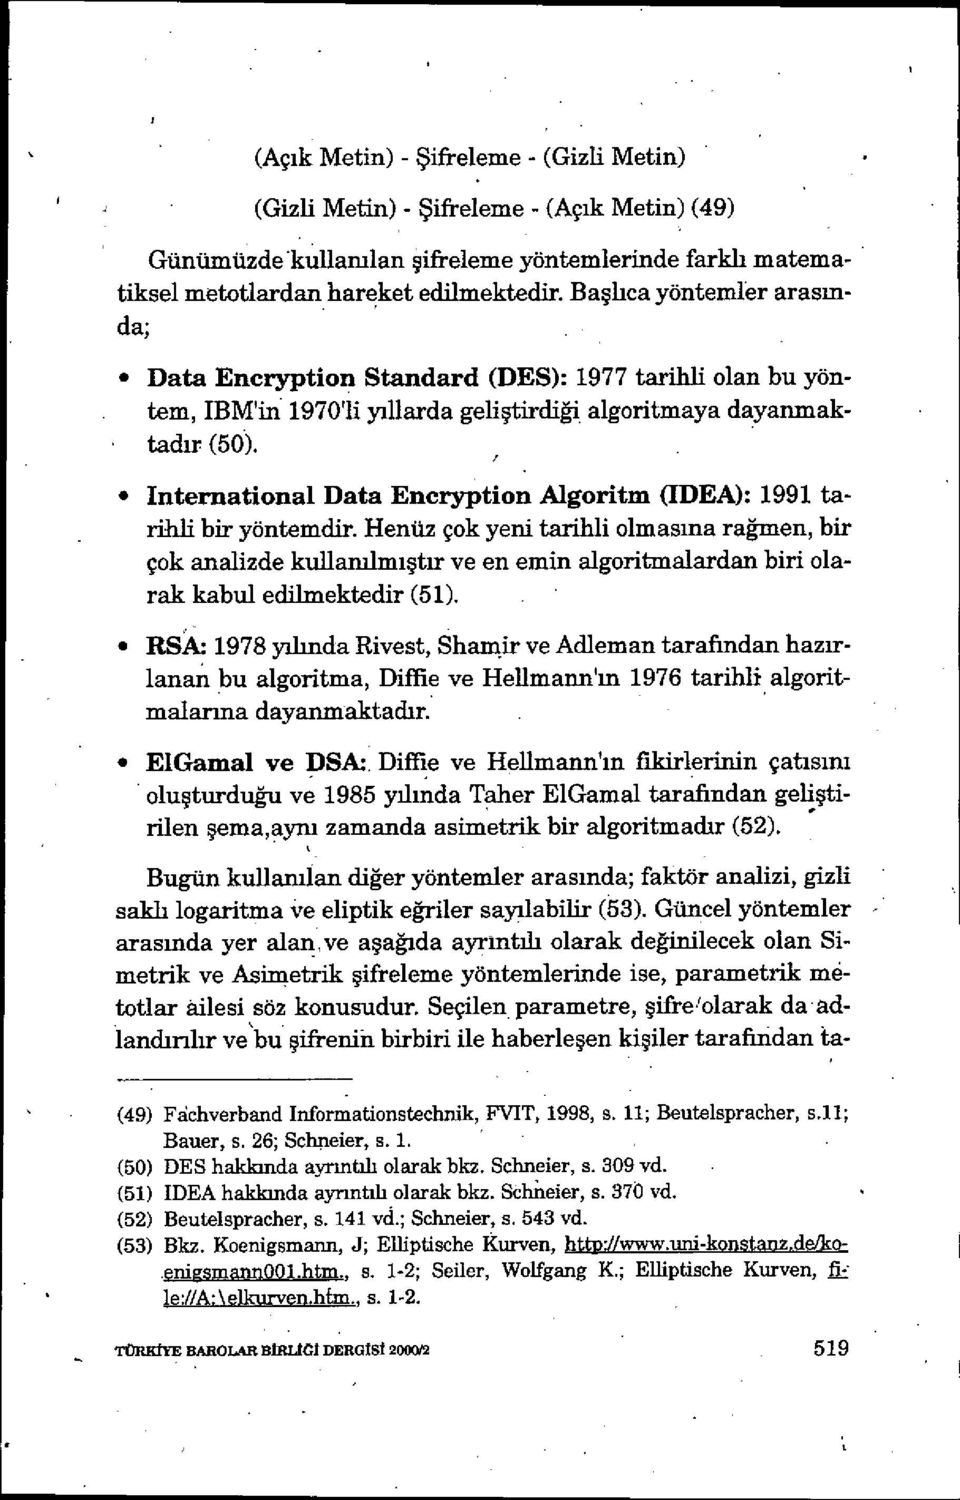 İnternational Data Encryption Algoritm (IDEA): 1991 tarihli bir yöntemdir.